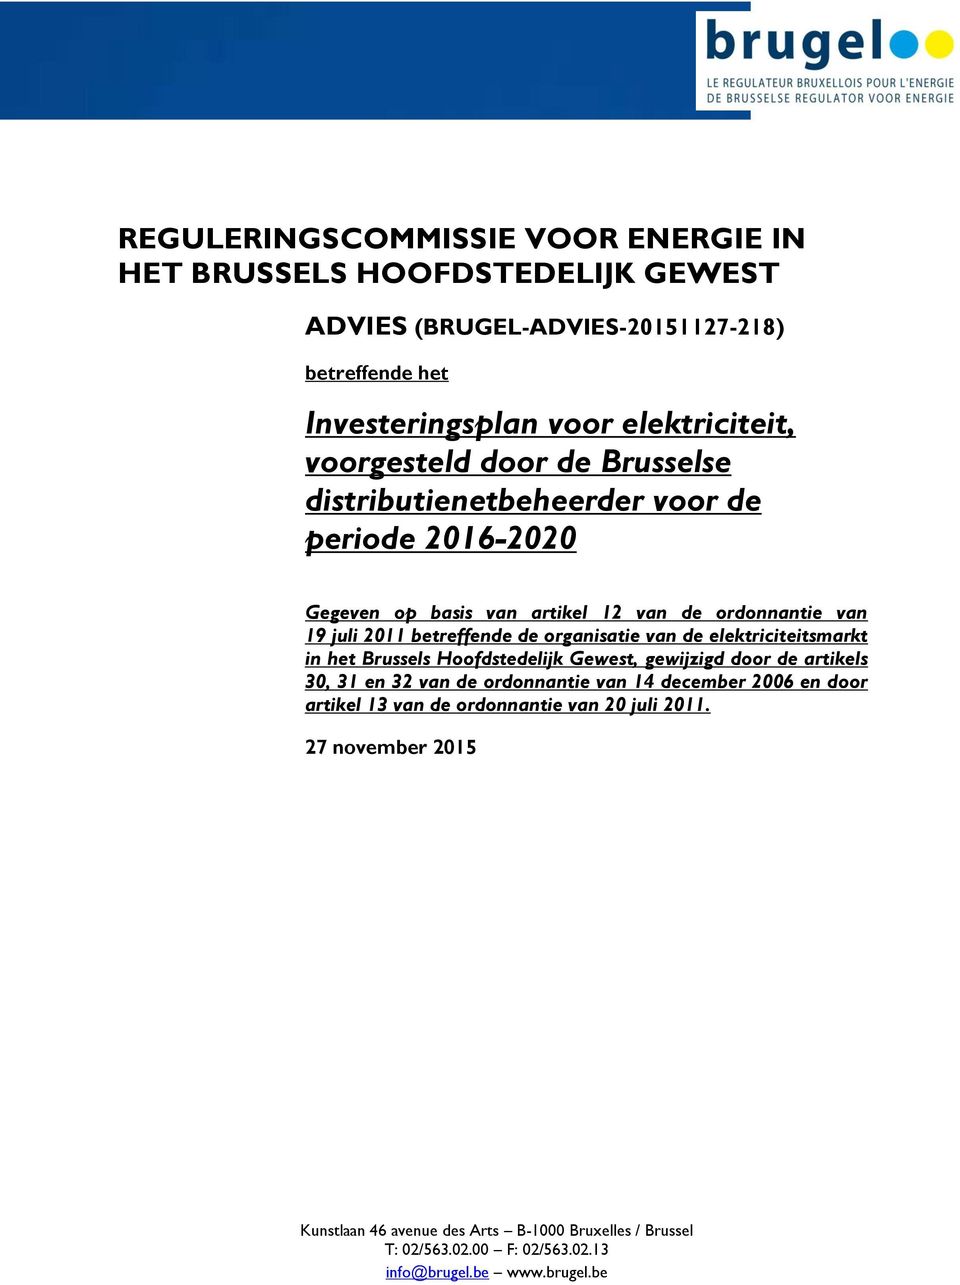 organisatie van de elektriciteitsmarkt in het Brussels Hoofdstedelijk Gewest, gewijzigd door de artikels 30, 31 en 32 van de ordonnantie van 14 december 2006 en door